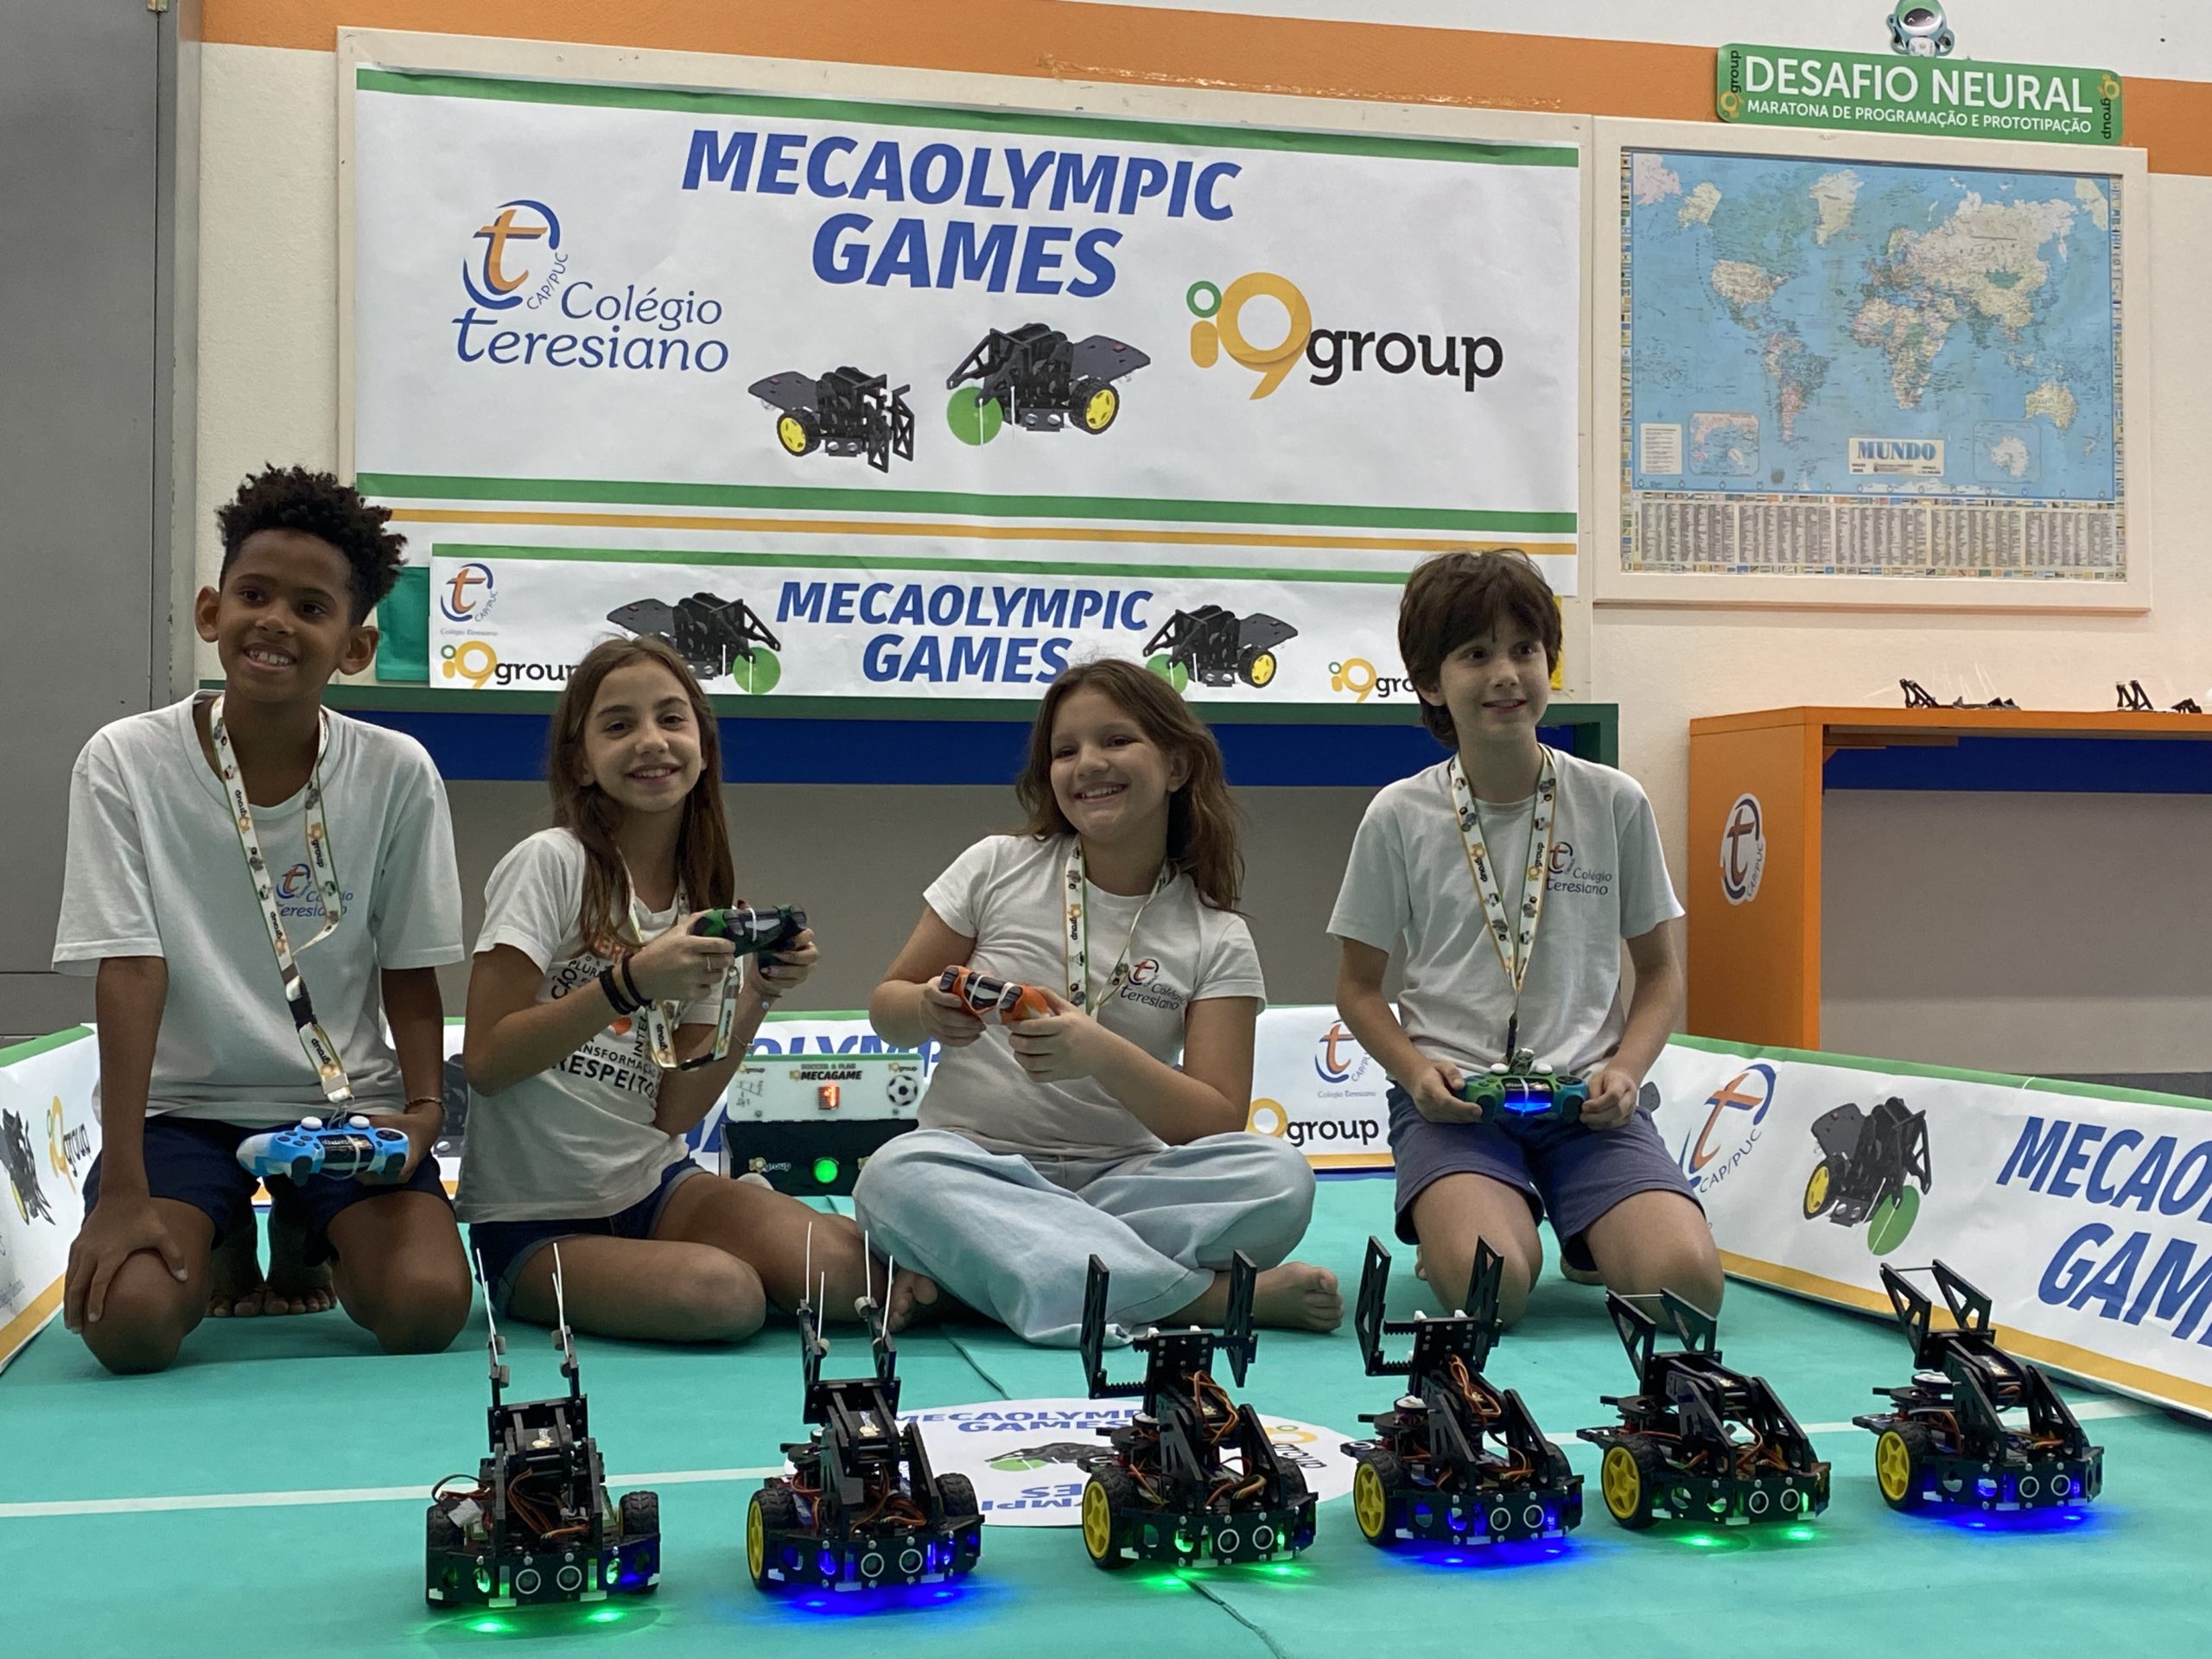 MecaOlympic Games 2023: robôs disputam campeonato em evento acadêmico aberto ao público no Rio (Foto: Divulgação)